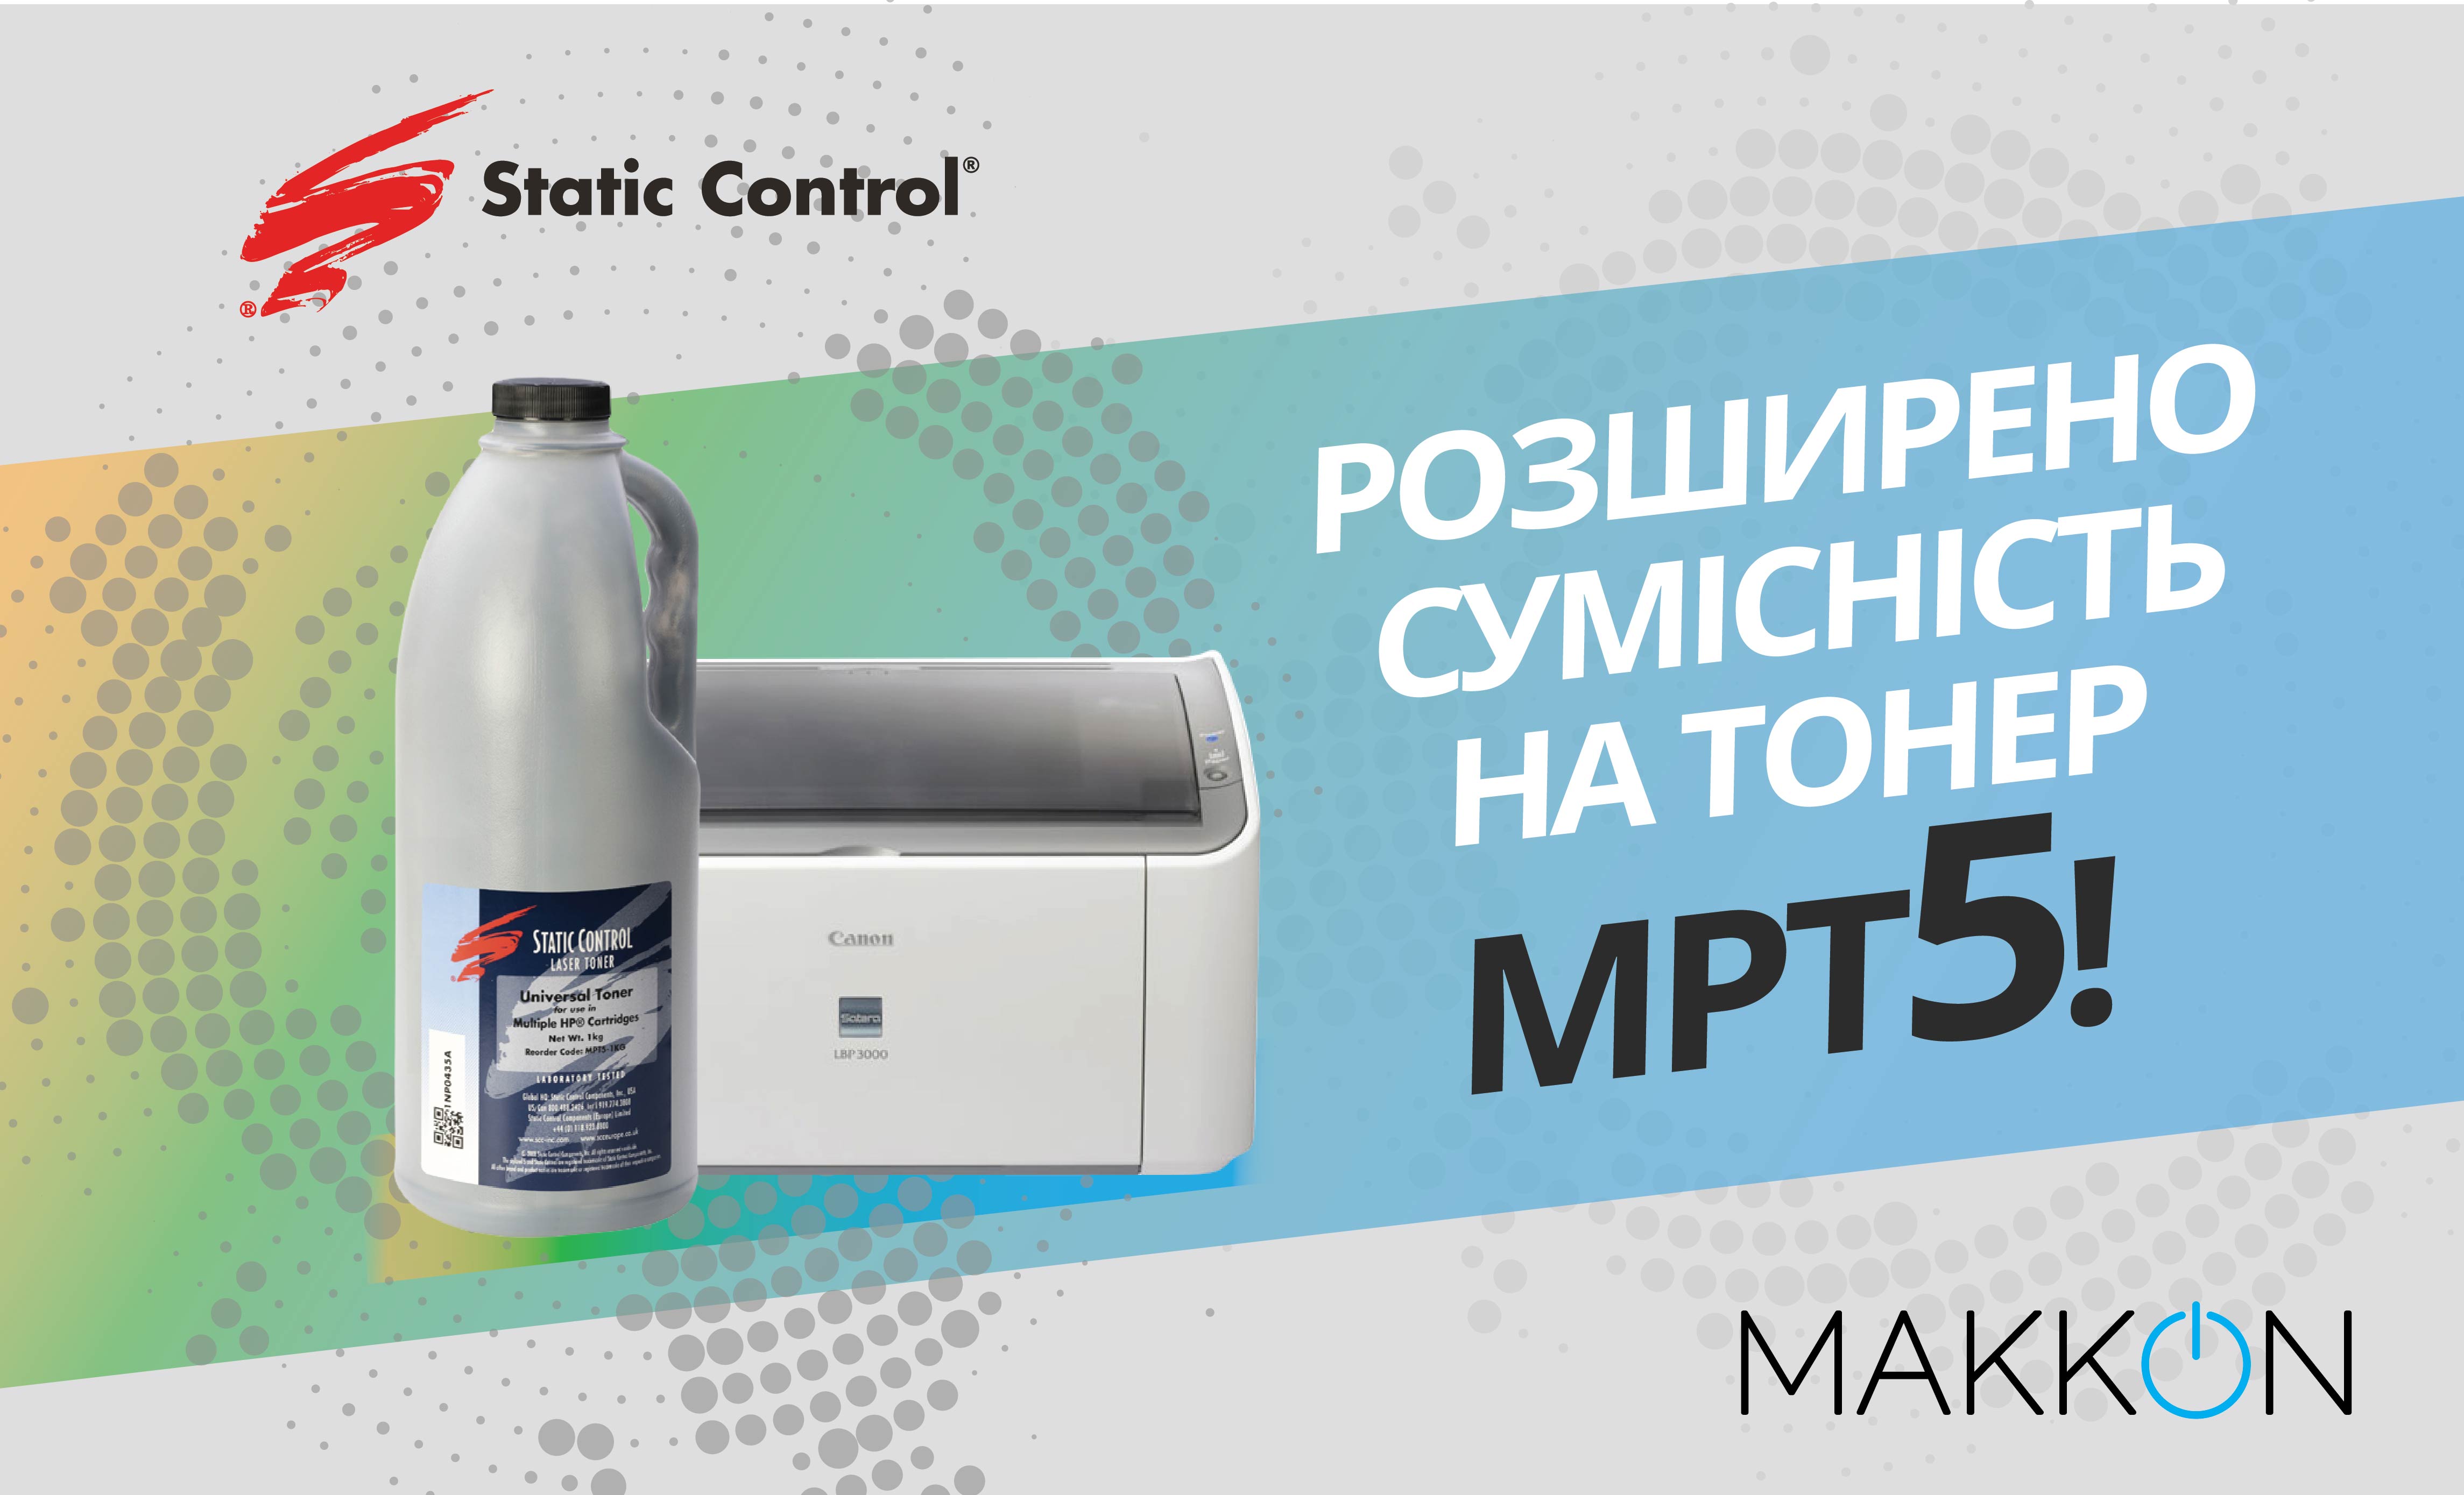 Розширено сумісність монохромного тонера MPT5 від Static Control